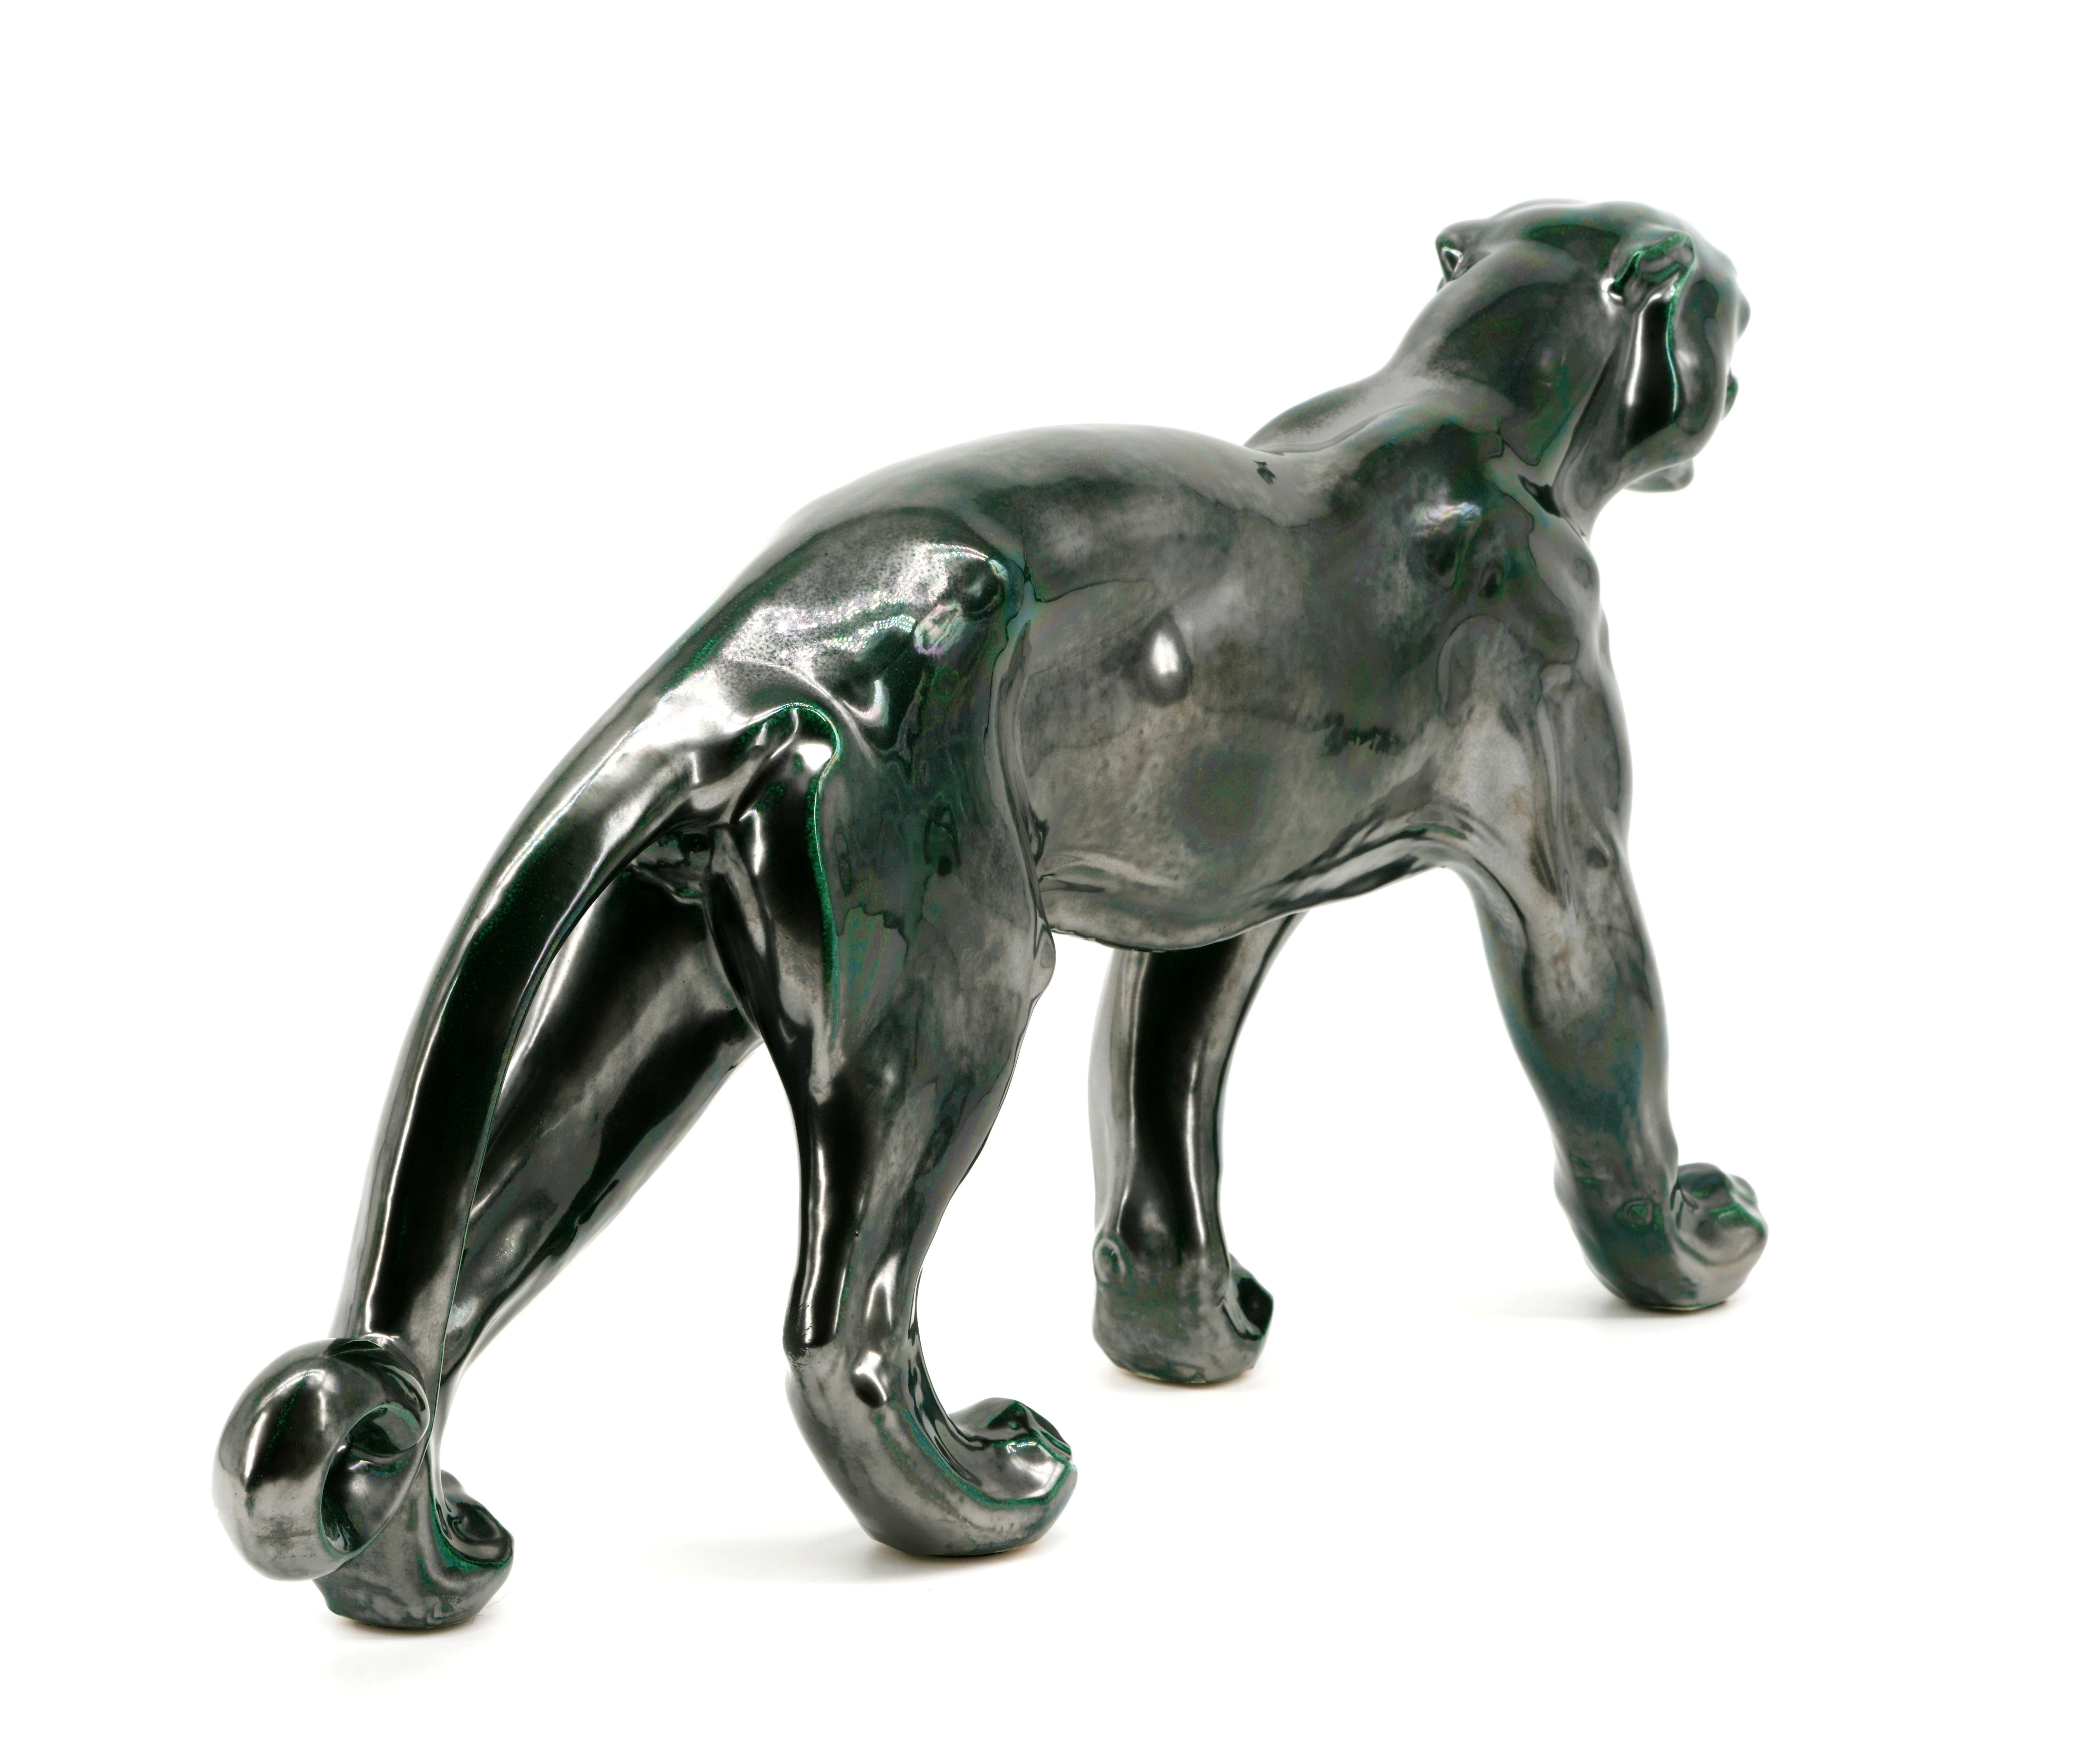 Santiago Rodriguez Bonome French Art Deco Ceramic Panther Sculpture, 1940s For Sale 1